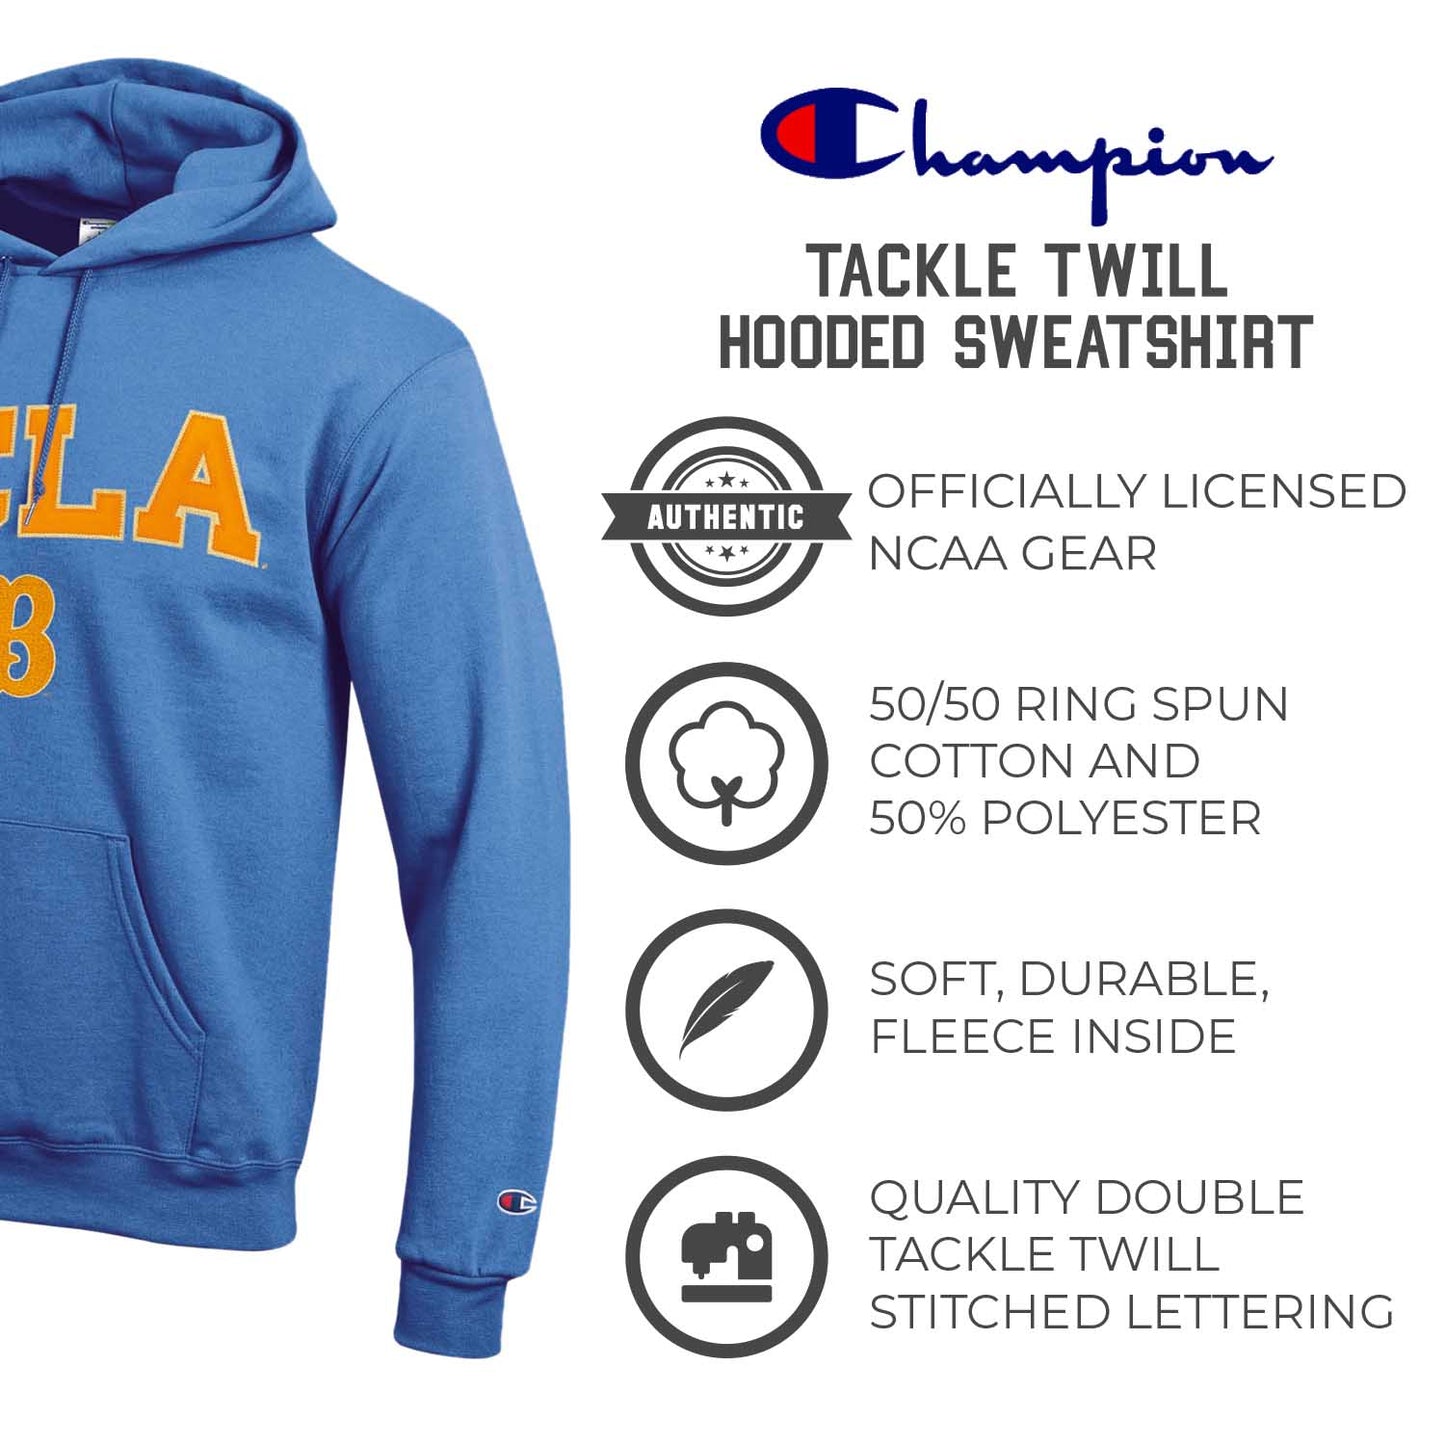 UCLA Bruins Champion Adult Tackle Twill Hooded Sweatshirt - Light Blue